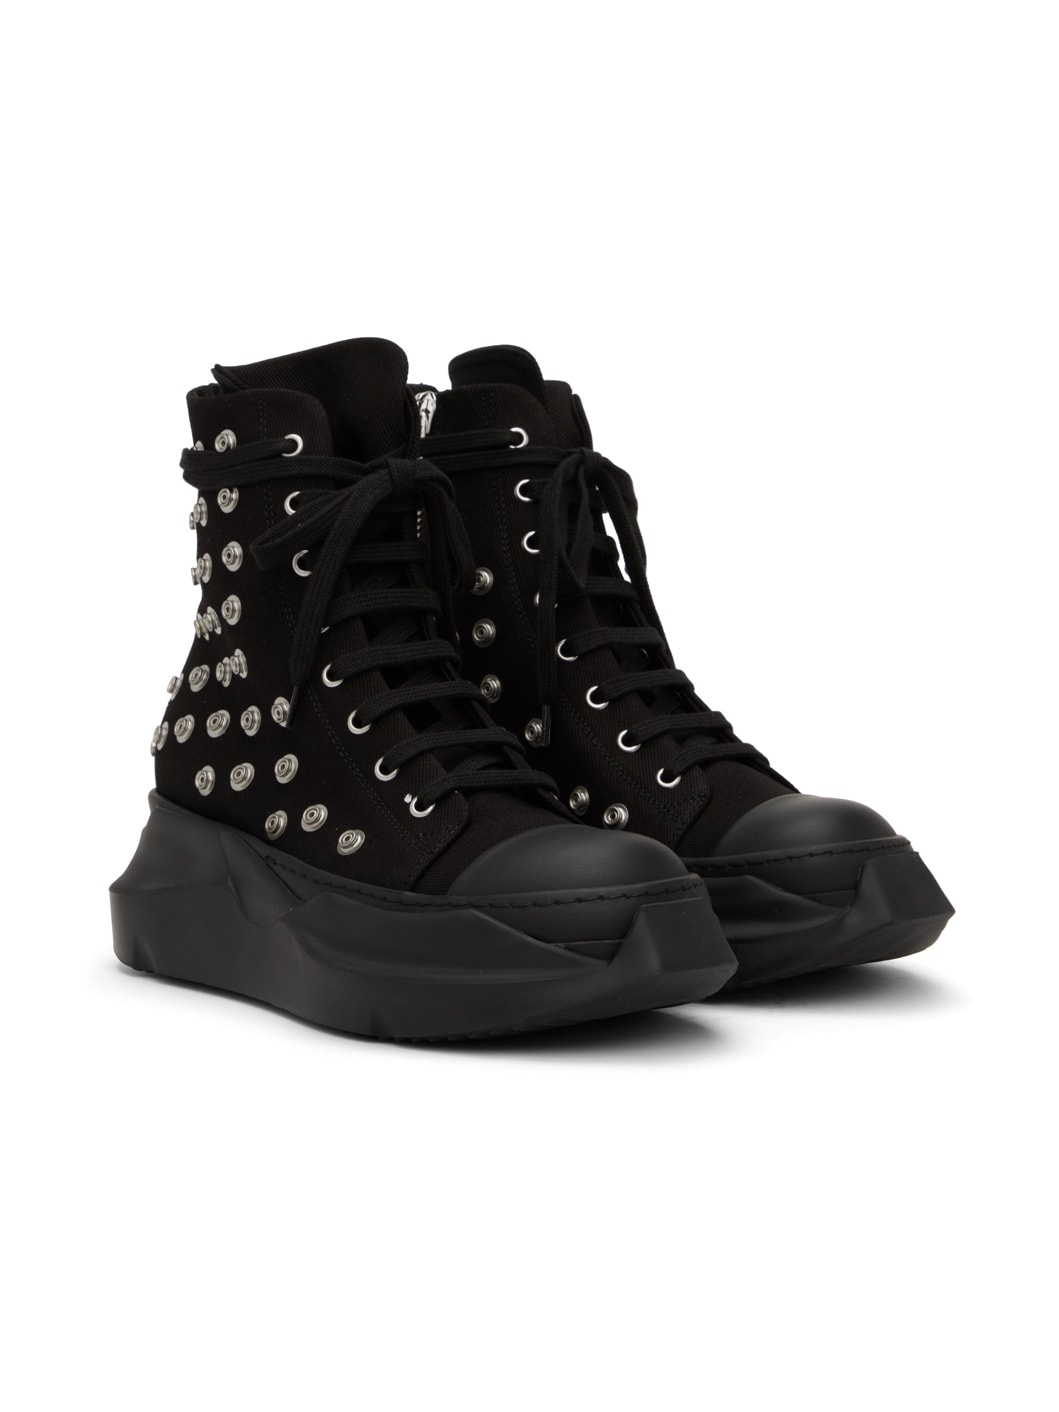 Black Rivet Sneakers - 4